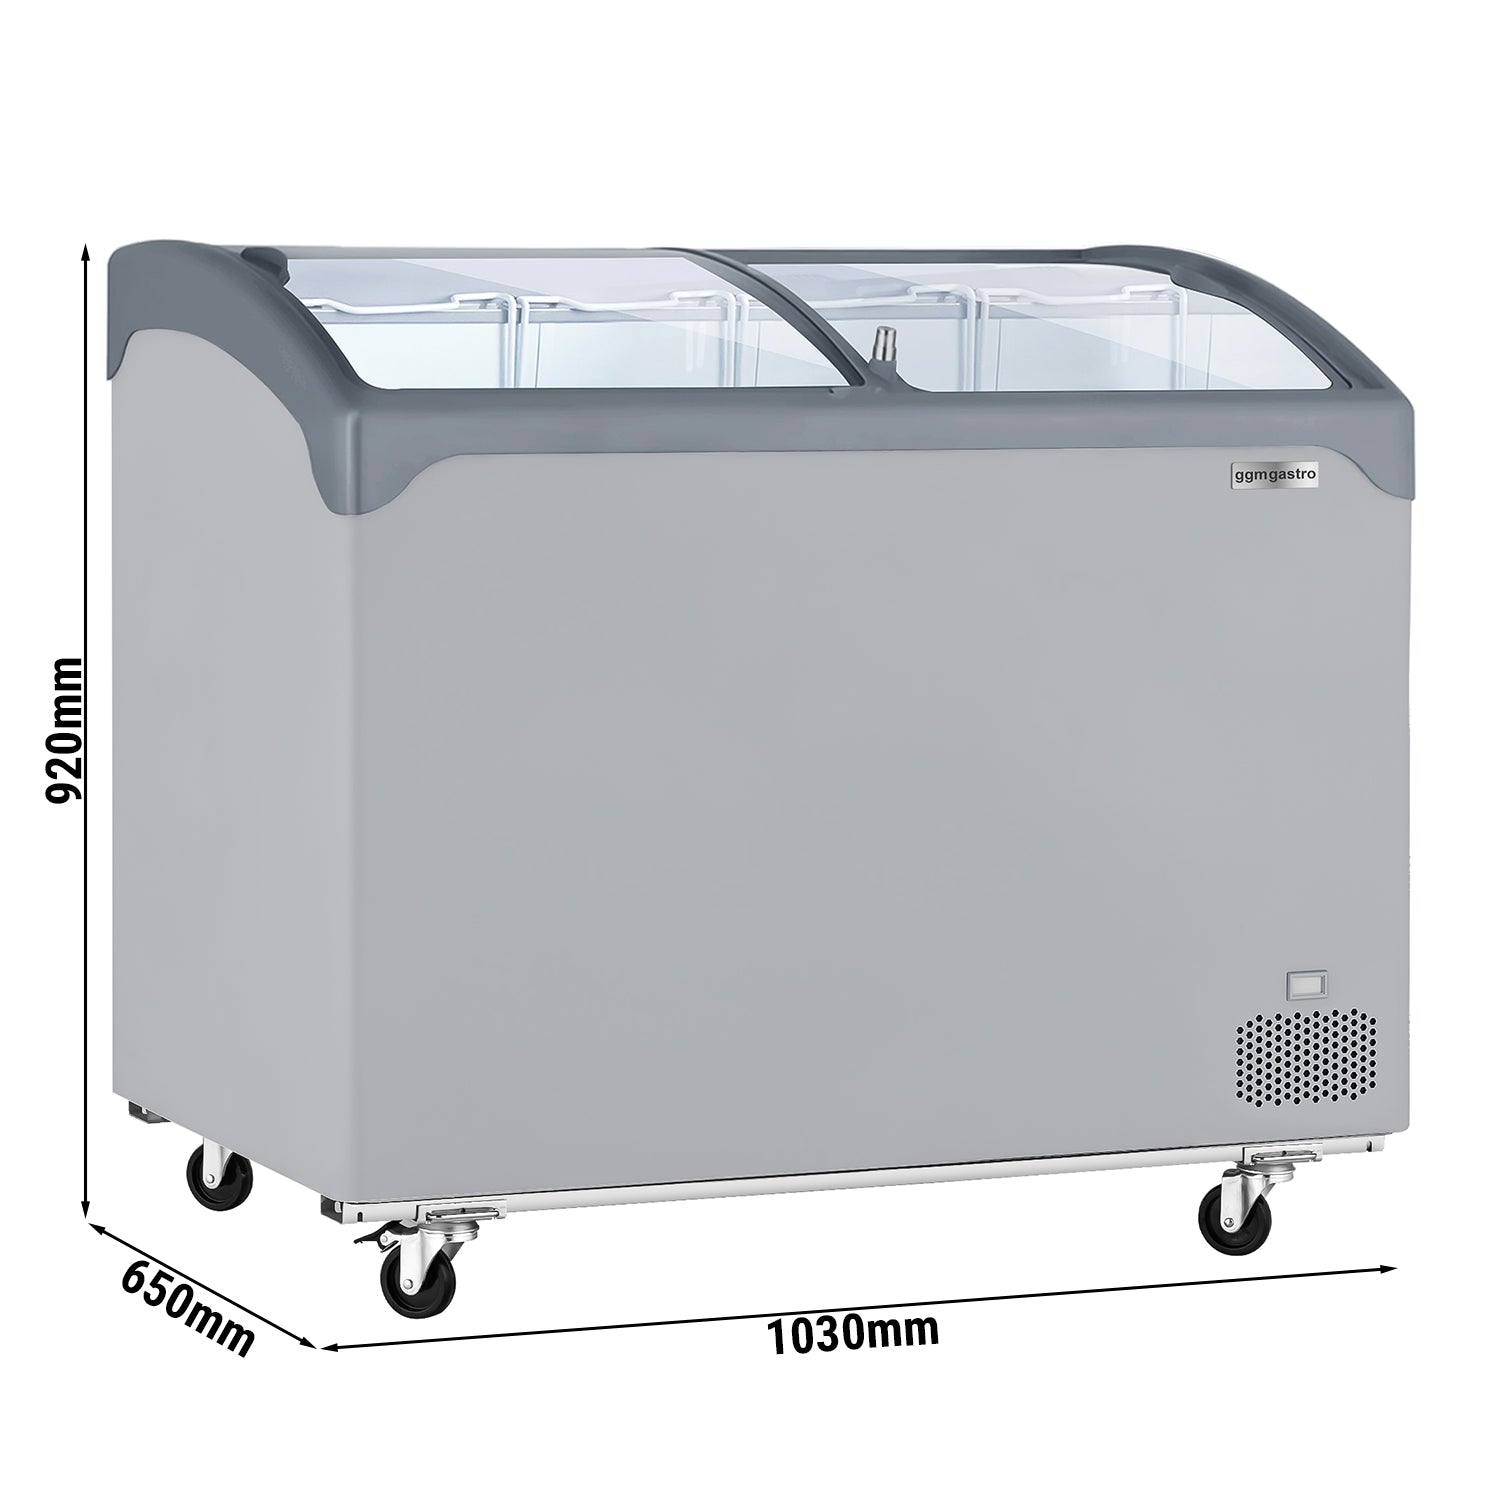 Kummefryser - 209 liter (nettoindhold) - GRÅ med glaslåg